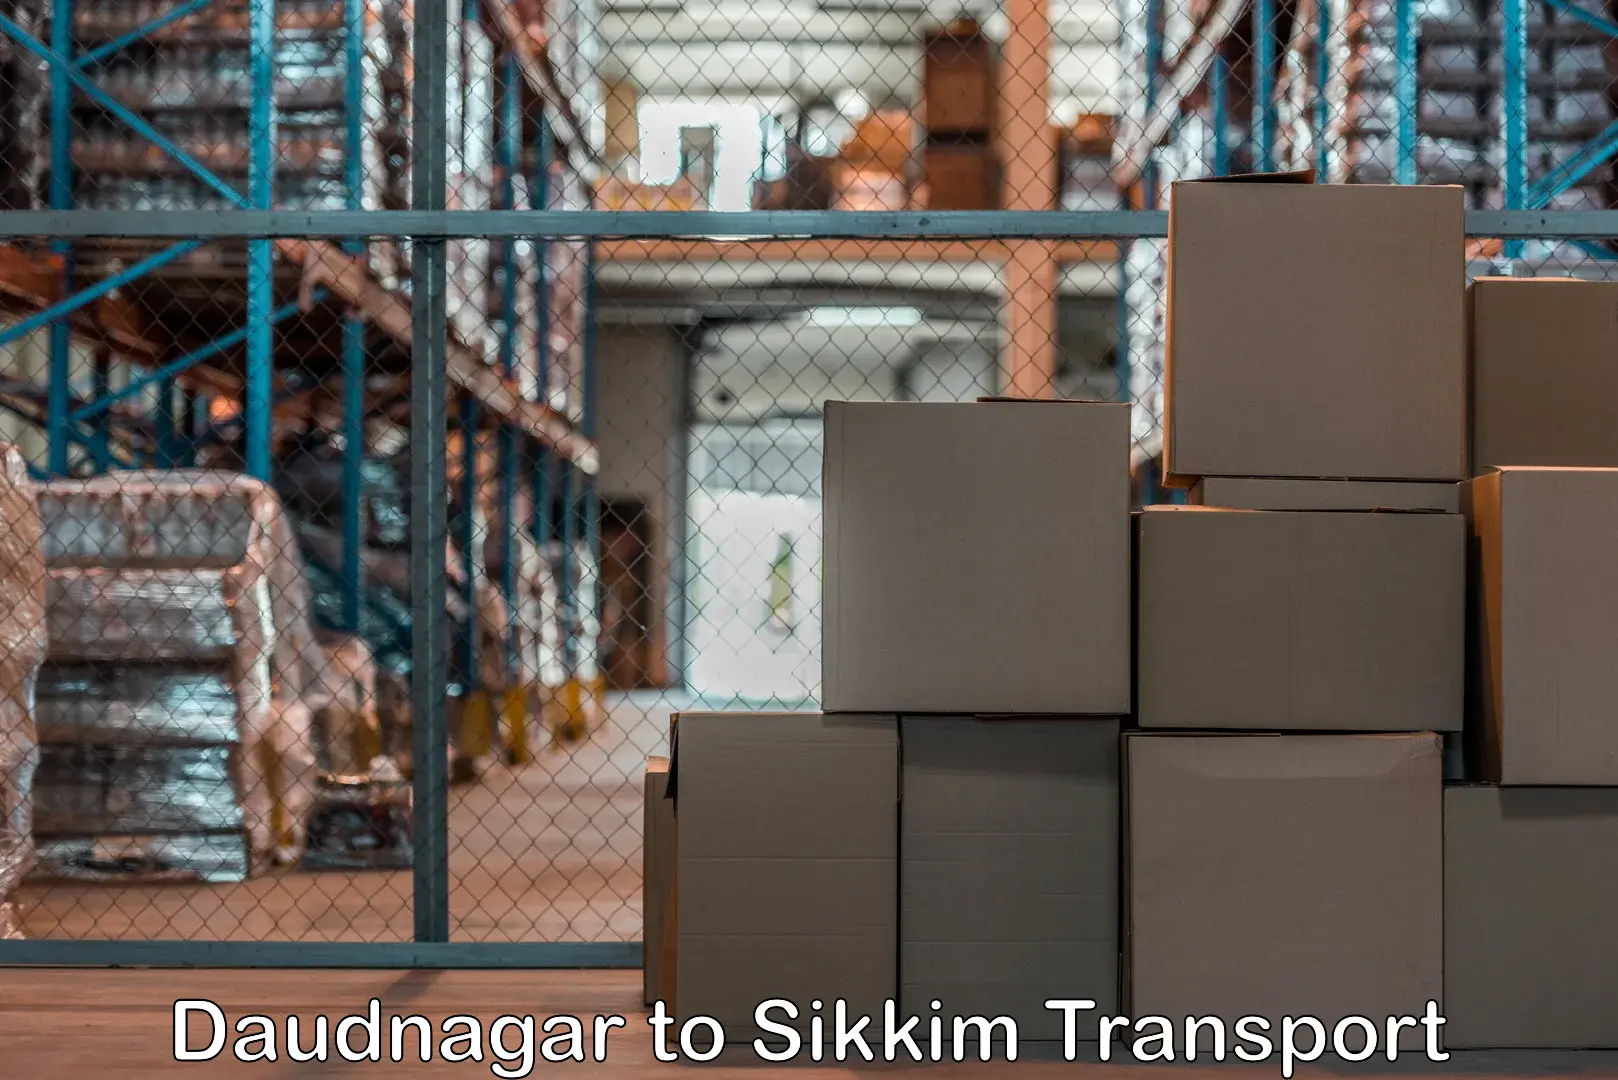 All India transport service Daudnagar to Geyzing